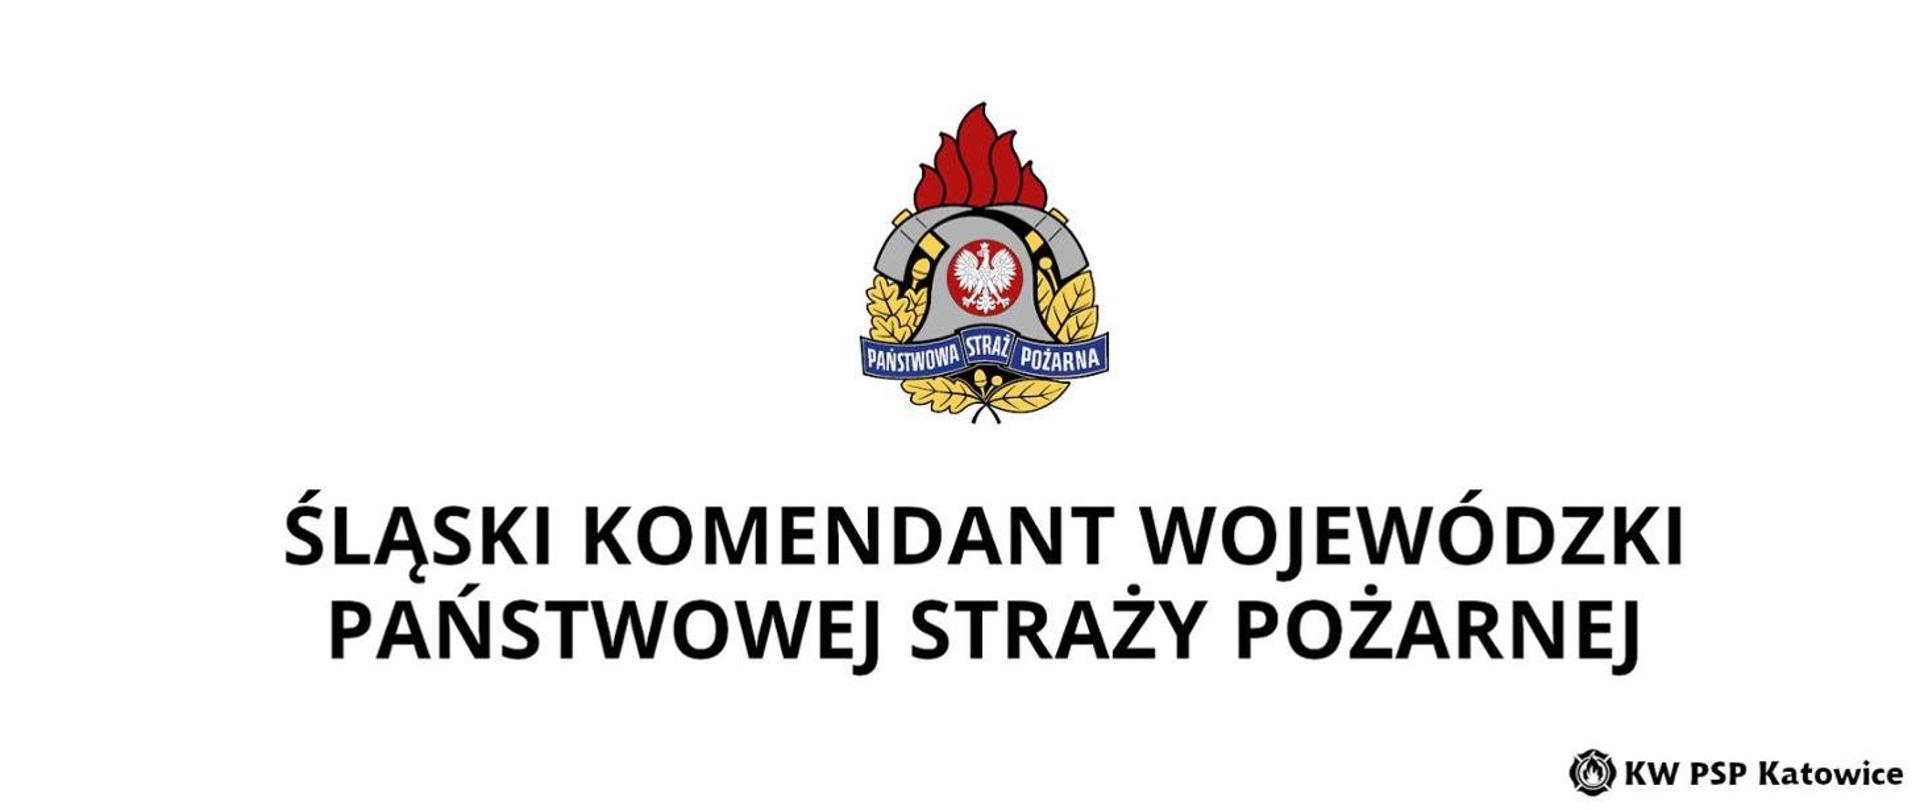 Zdjęcie przedstawia logo ŚKW PSP